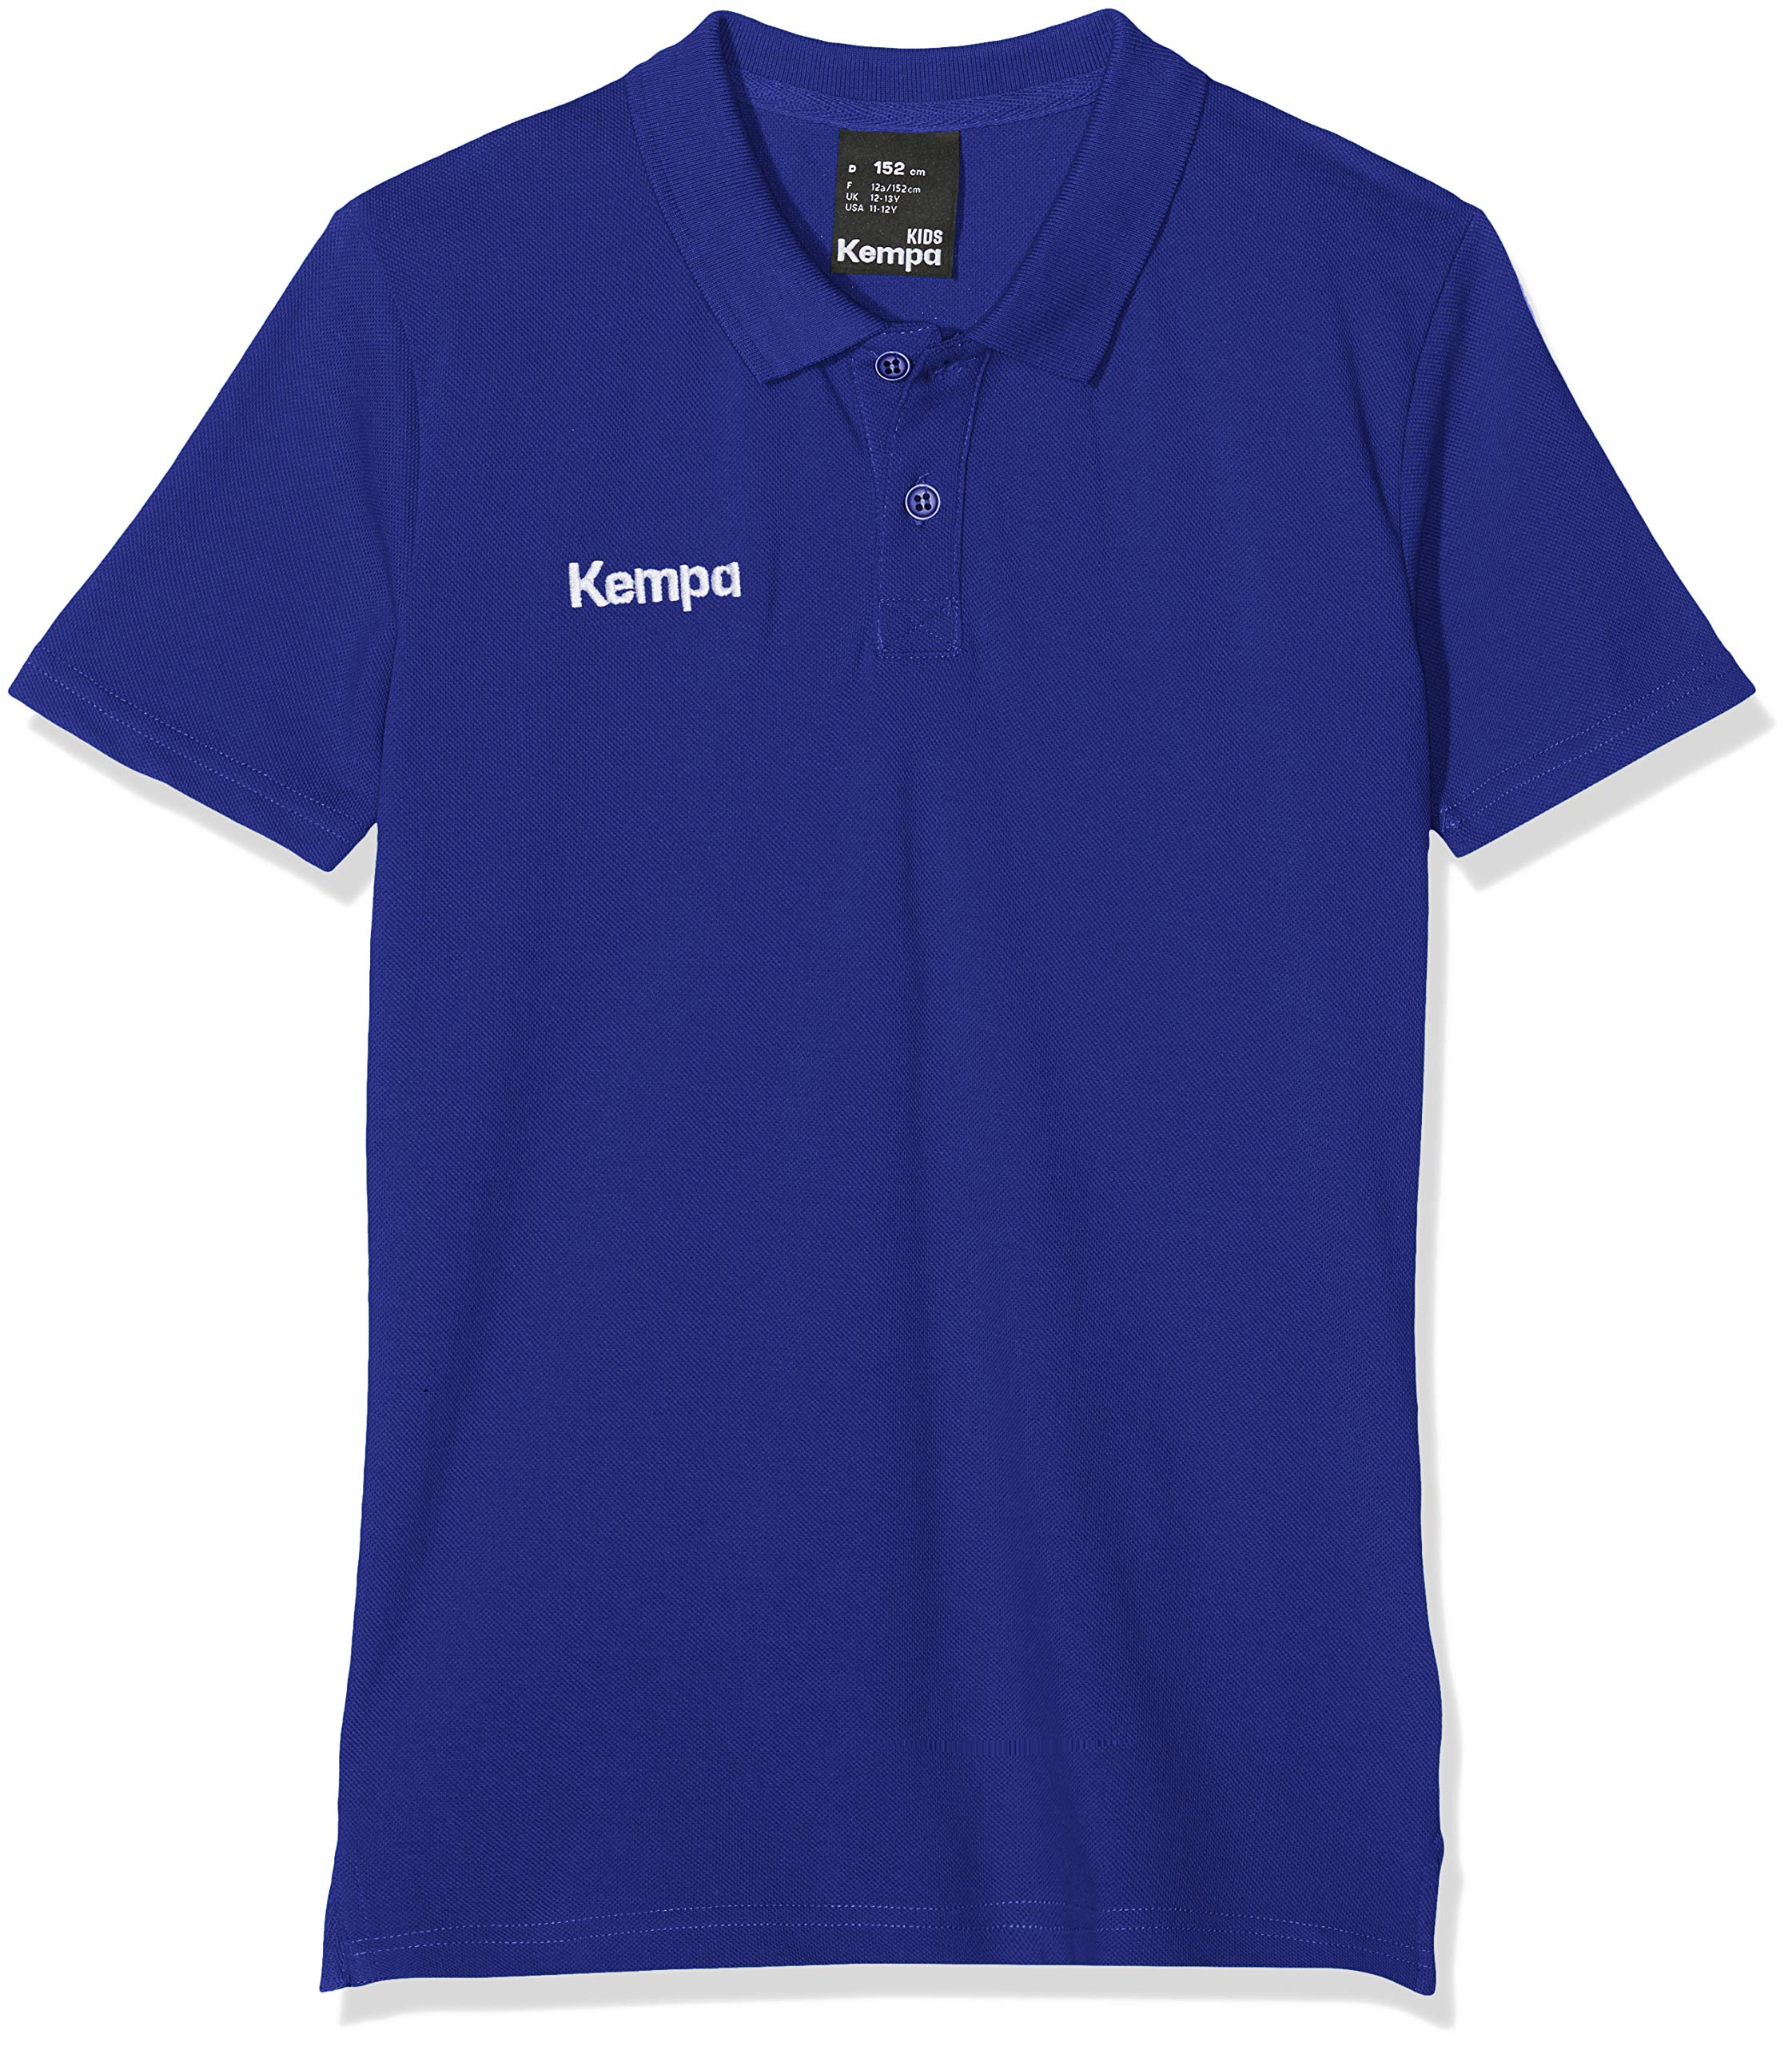 Kempa Herren Herren Polo Shirt Classic Polo Shirt, royal, 3XL, 200234909